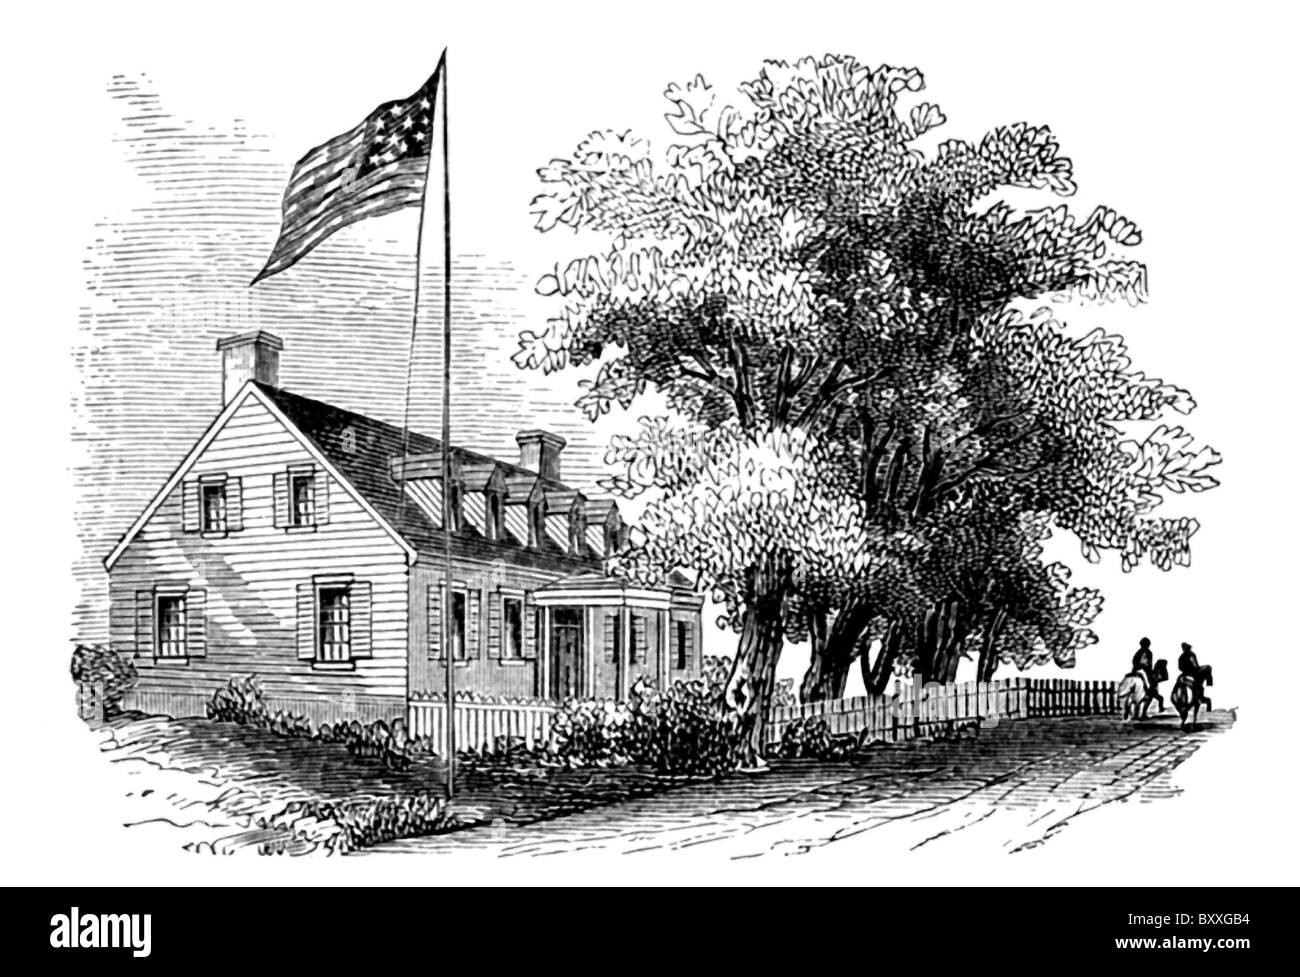 Les forces de l'Union faire le siège de Yorktown, en Virginie, et il a pris le contrôle de mai 1862. Le siège social de Gen McClellan ici. Banque D'Images